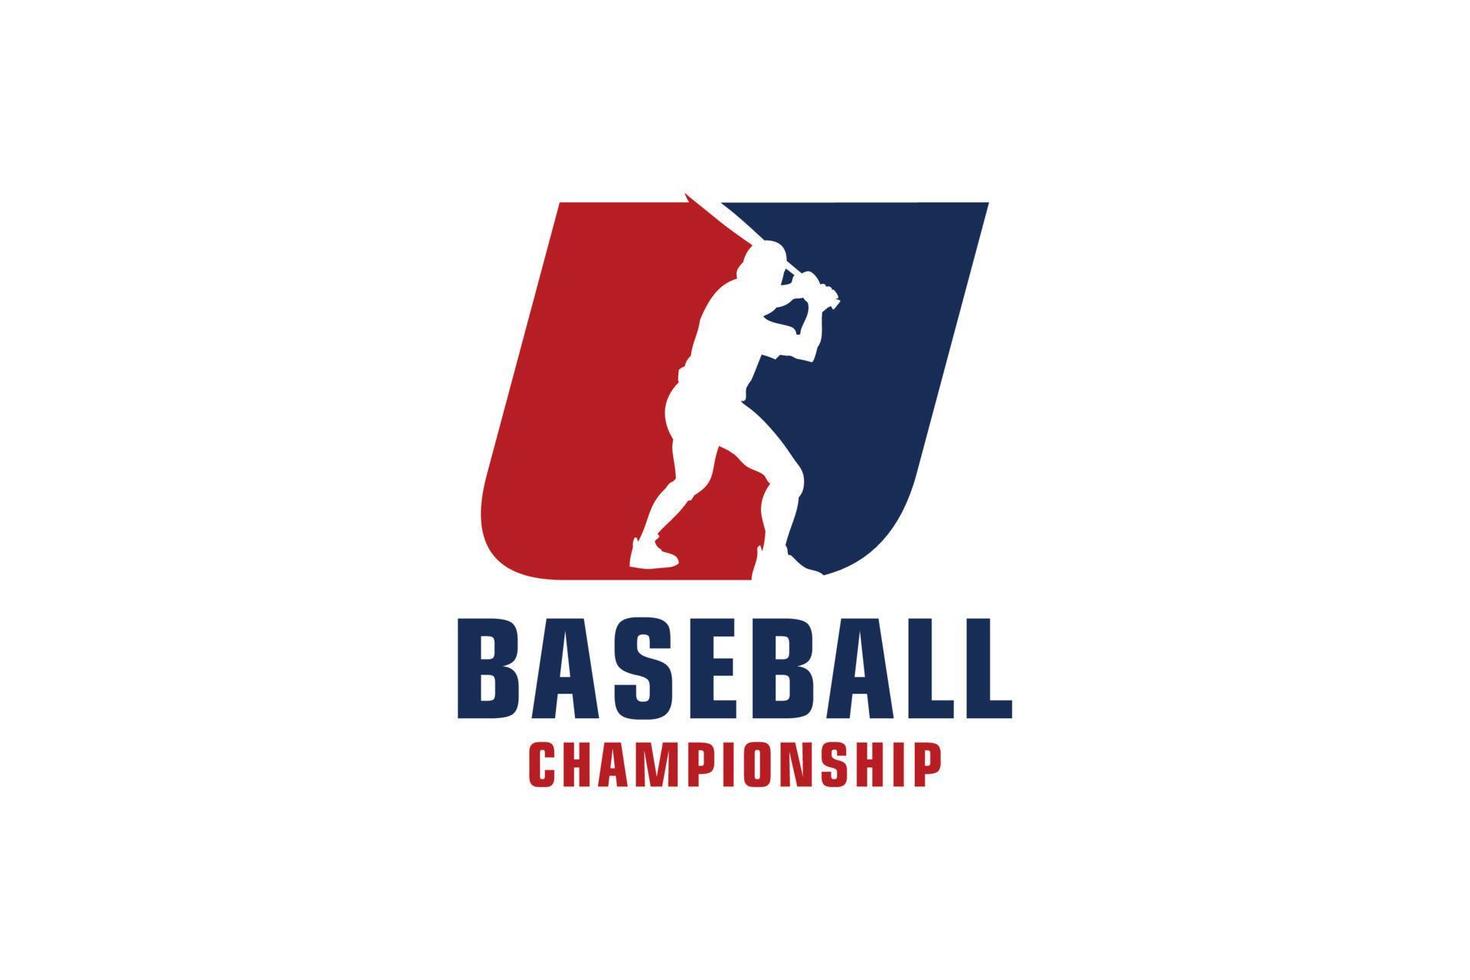 Buchstabe u mit Baseball-Logo-Design. Vektordesign-Vorlagenelemente für Sportteams oder Corporate Identity. vektor